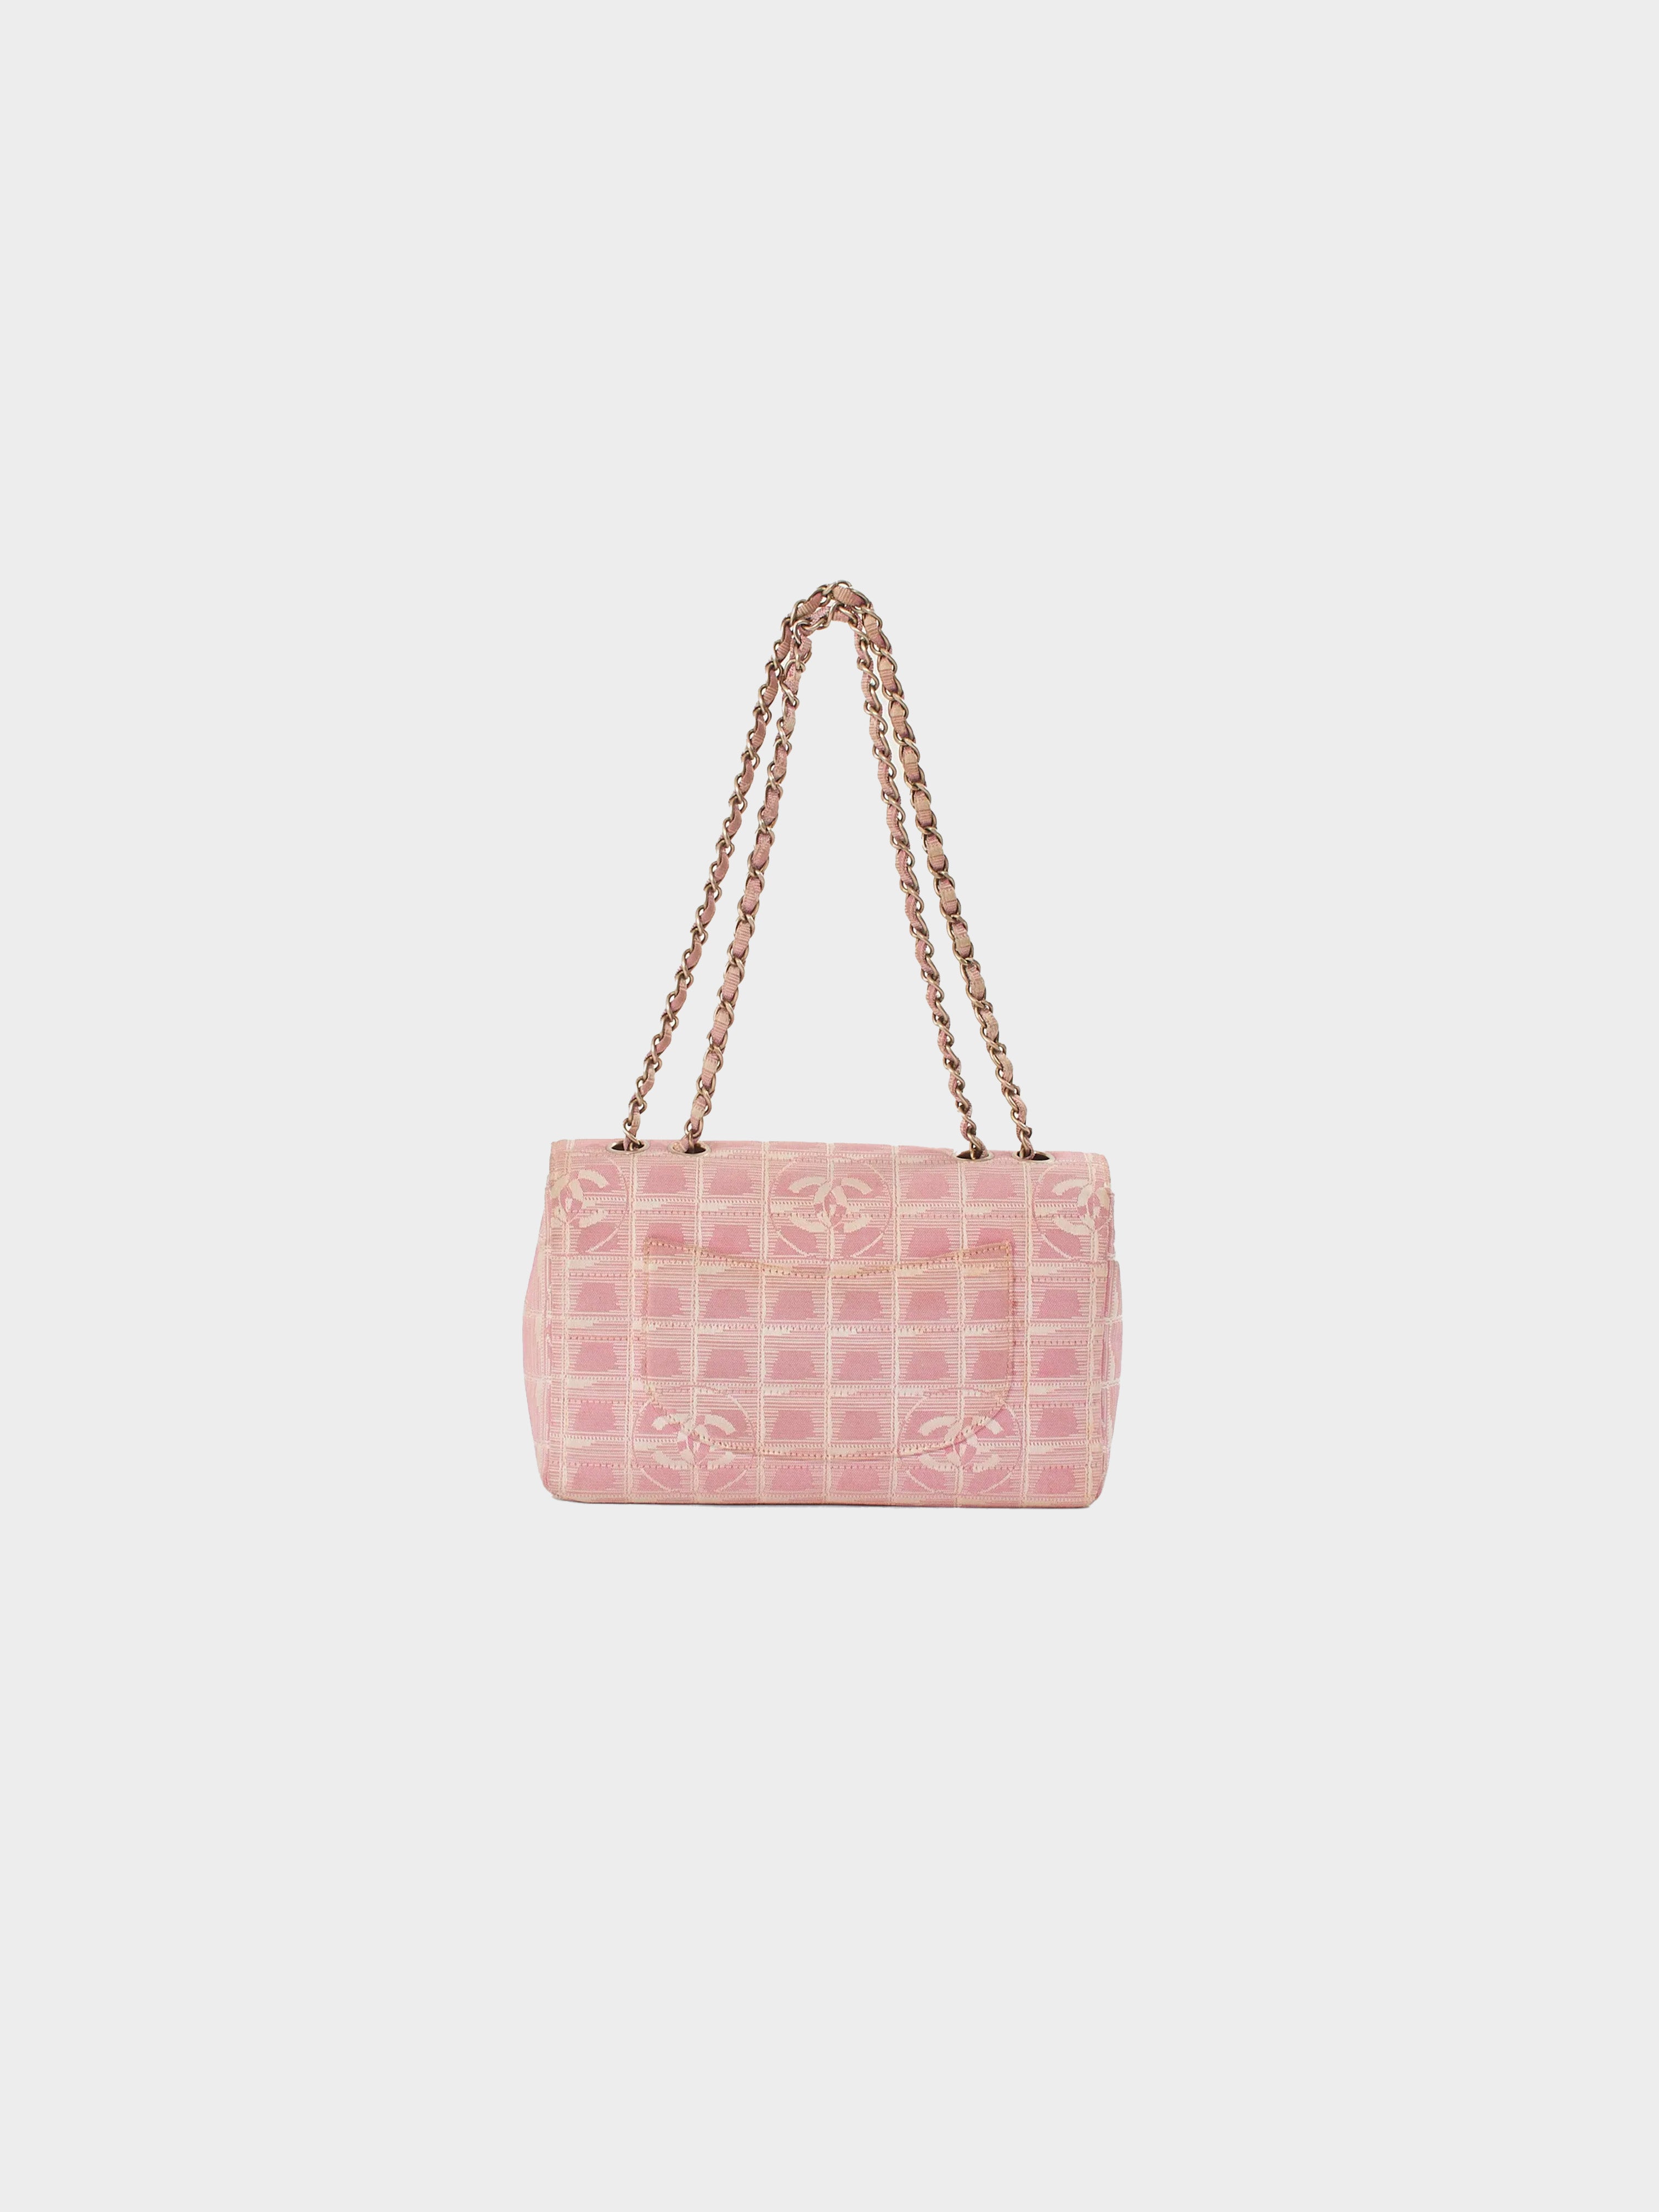 Chanel 2001 Travel Linge Pink Flap Bag